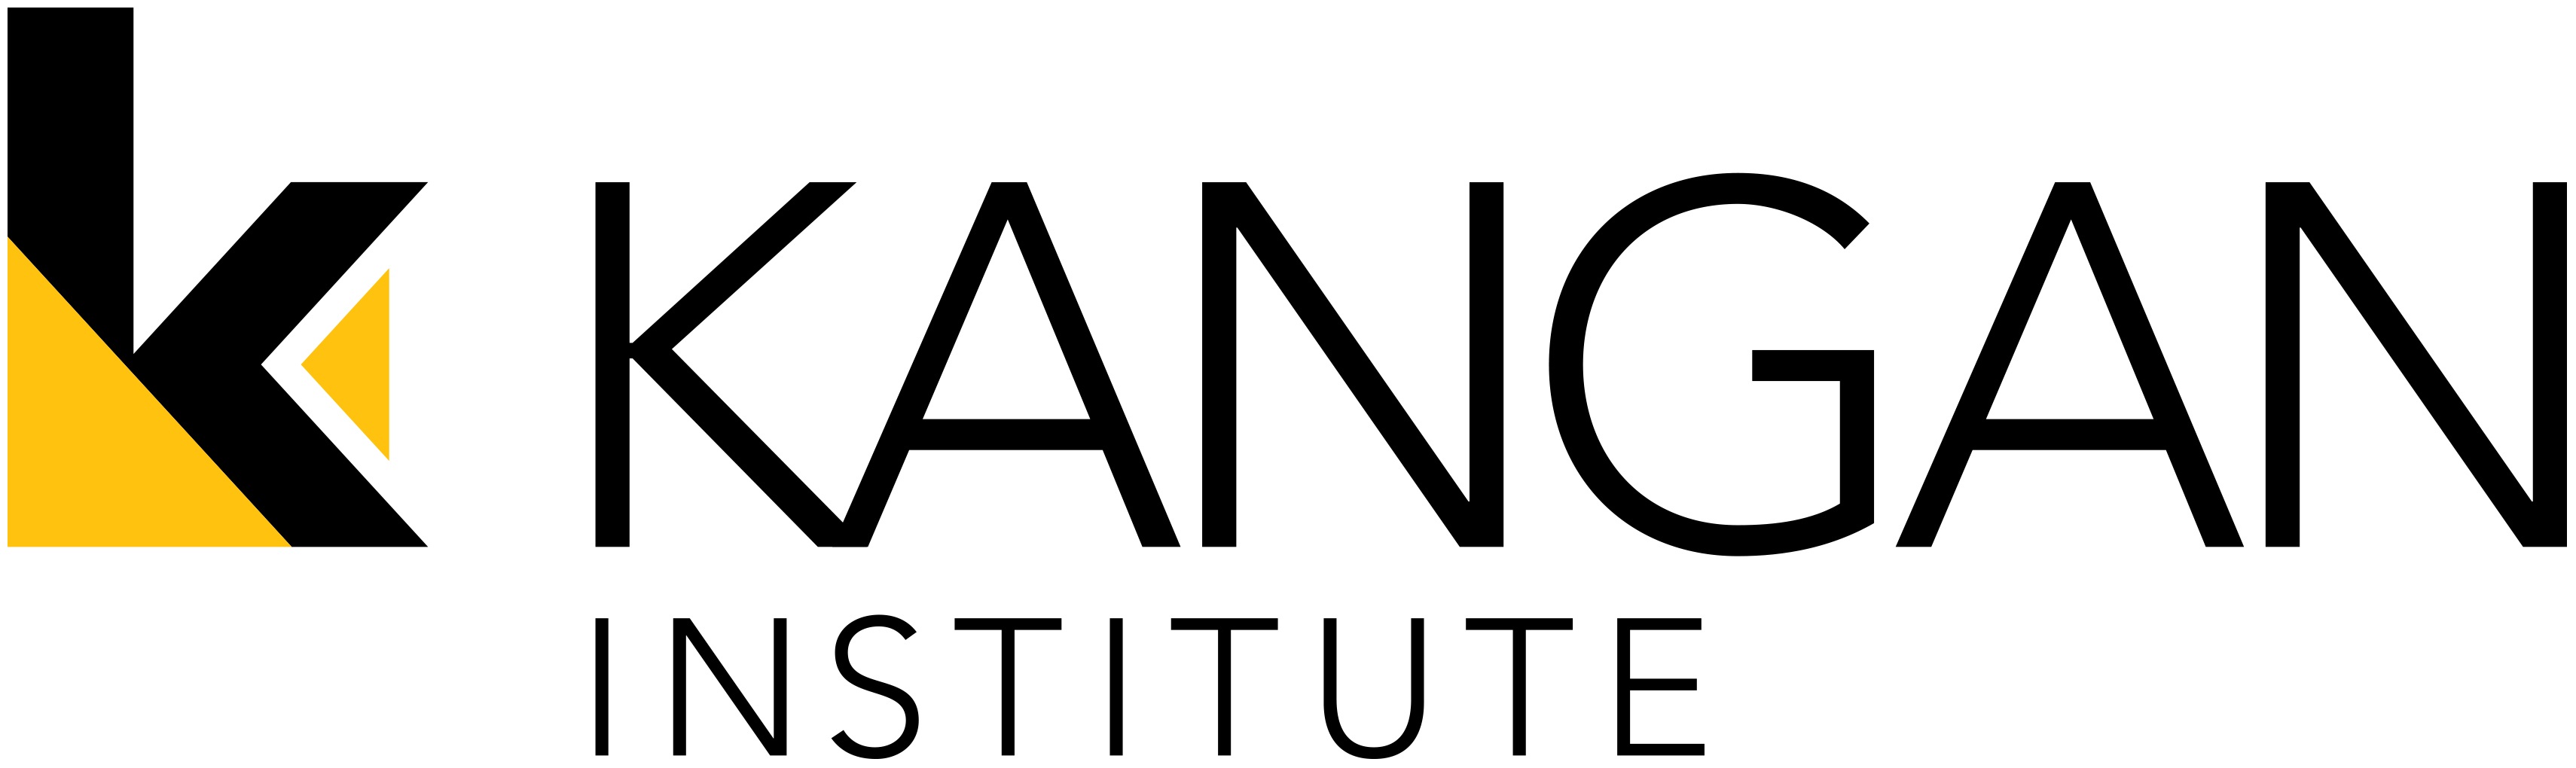 Kangan Institute of TAFE Logo